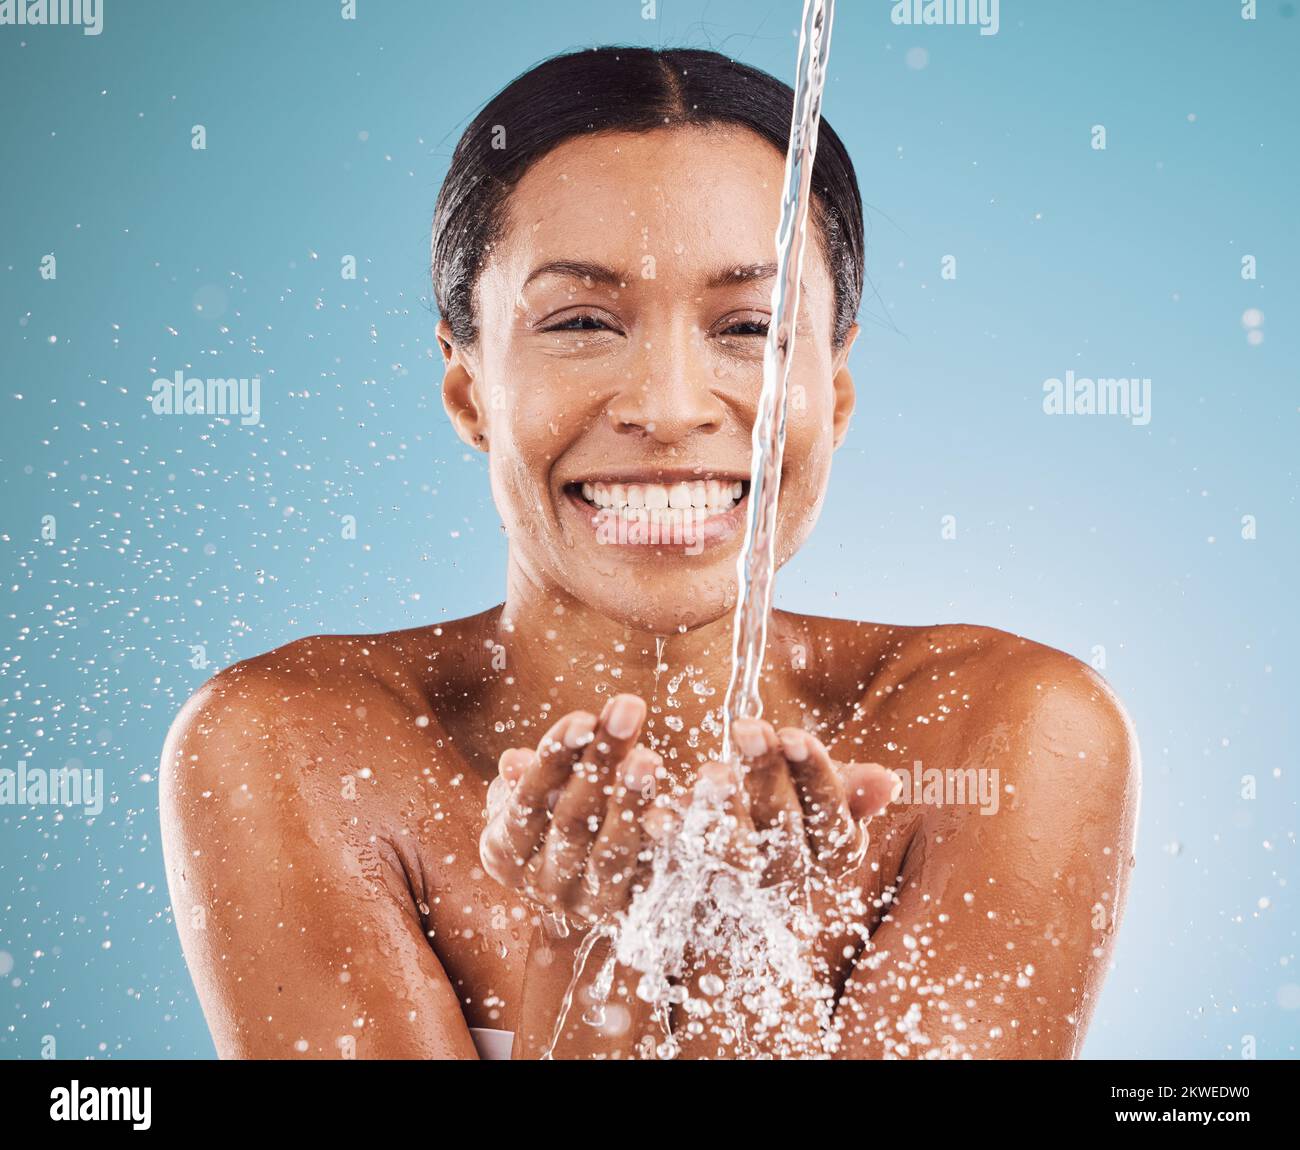 Reinigungs-, Wasser- und schwarze Frau mit Hautpflege Gesundheit, Beauty Wellness und fröhliche Dusche vor blauem Hintergrund im Studio. Wasserspritzer, kosmetisches Lächeln Stockfoto